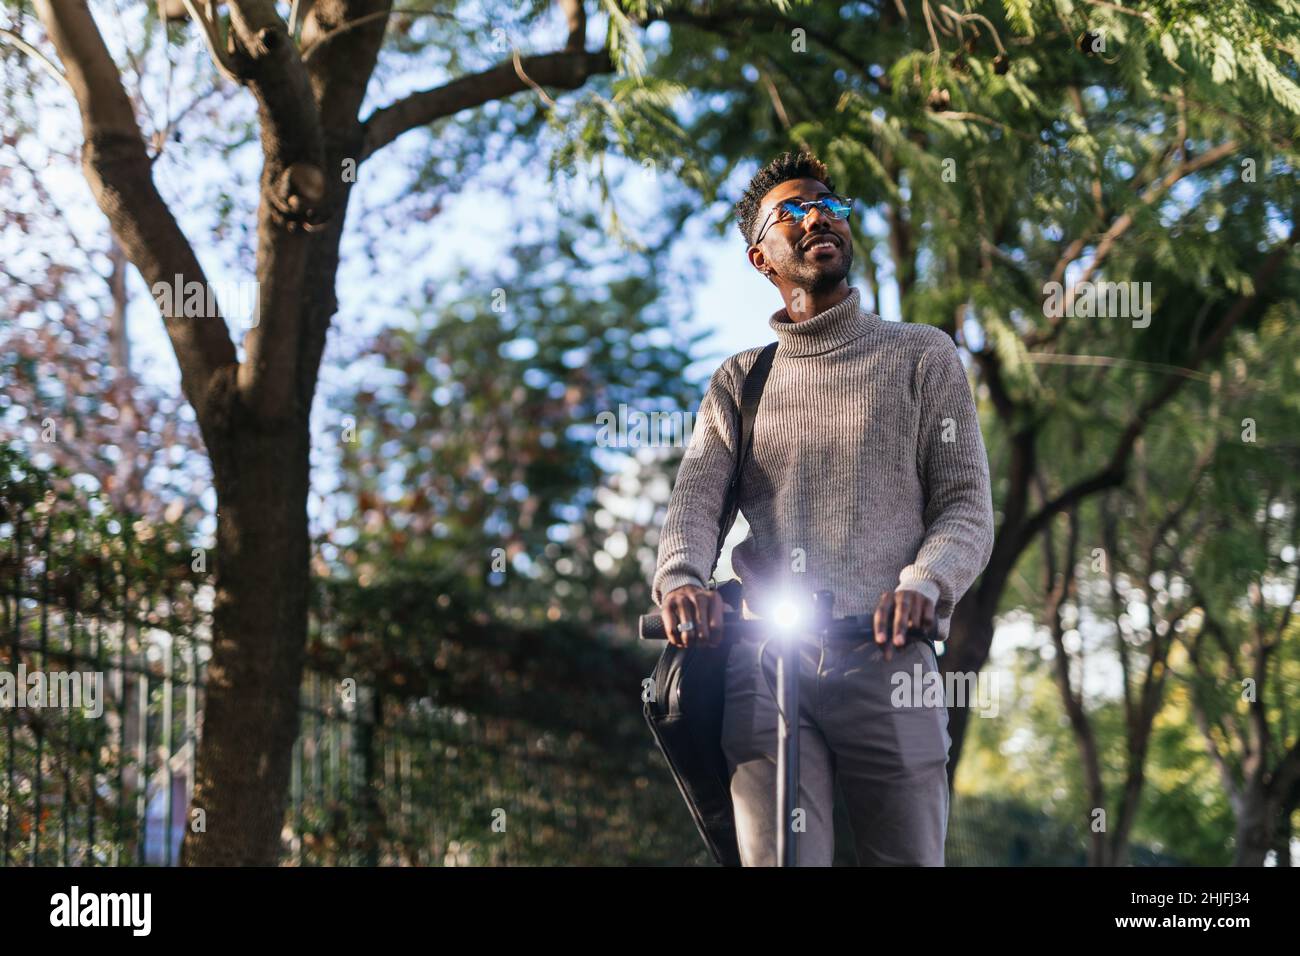 Homme afro-américain avec un gilet à col roulé en train de faire une promenade avec son scooter électrique dans un parc Banque D'Images